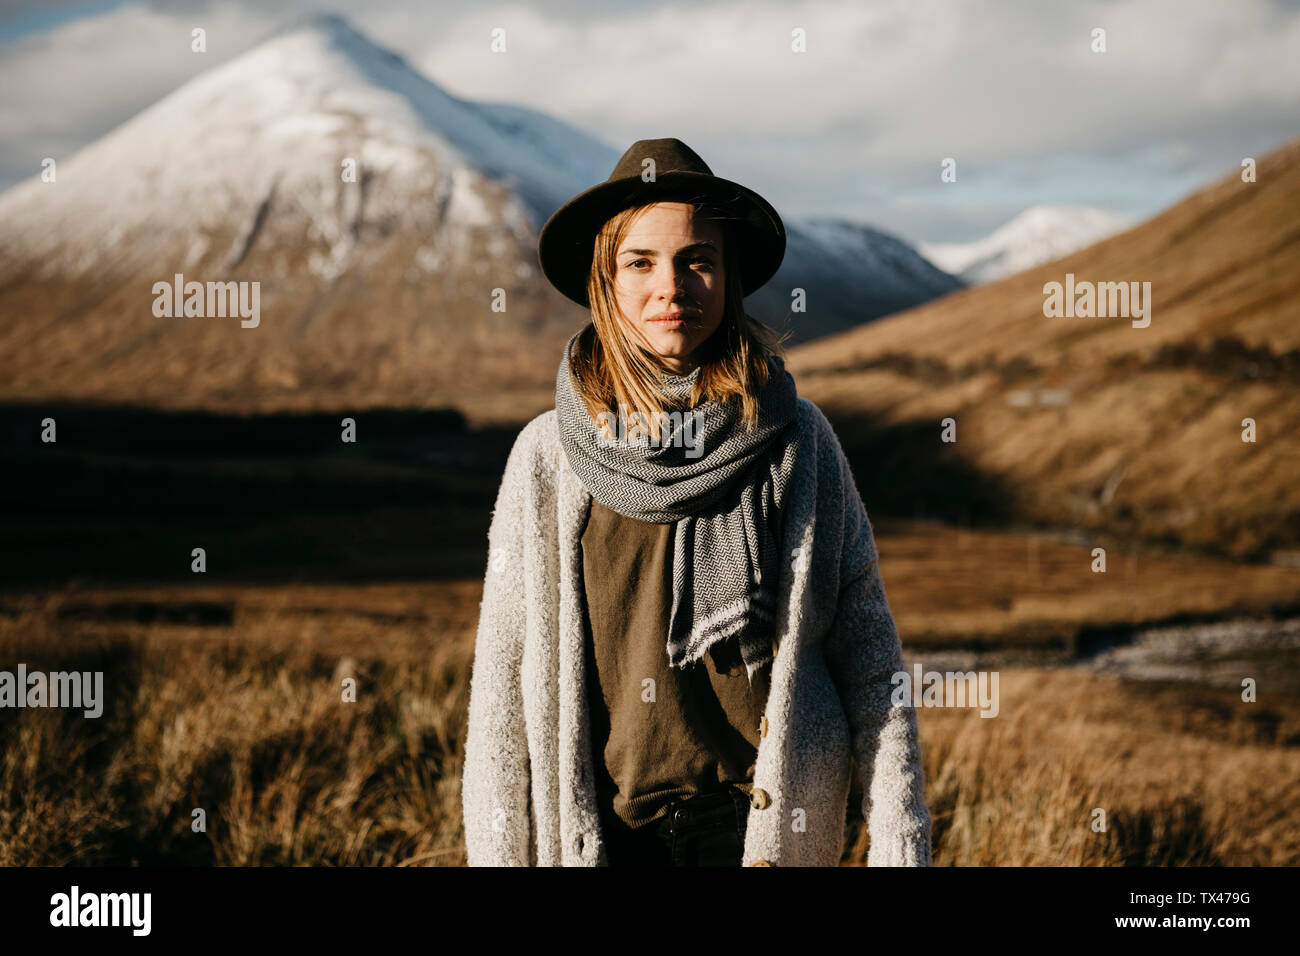 Reino Unido, Escocia, Loch Lomond y los Trossachs National Park, retrato de mujer joven con sombrero en el paisaje rural Foto de stock